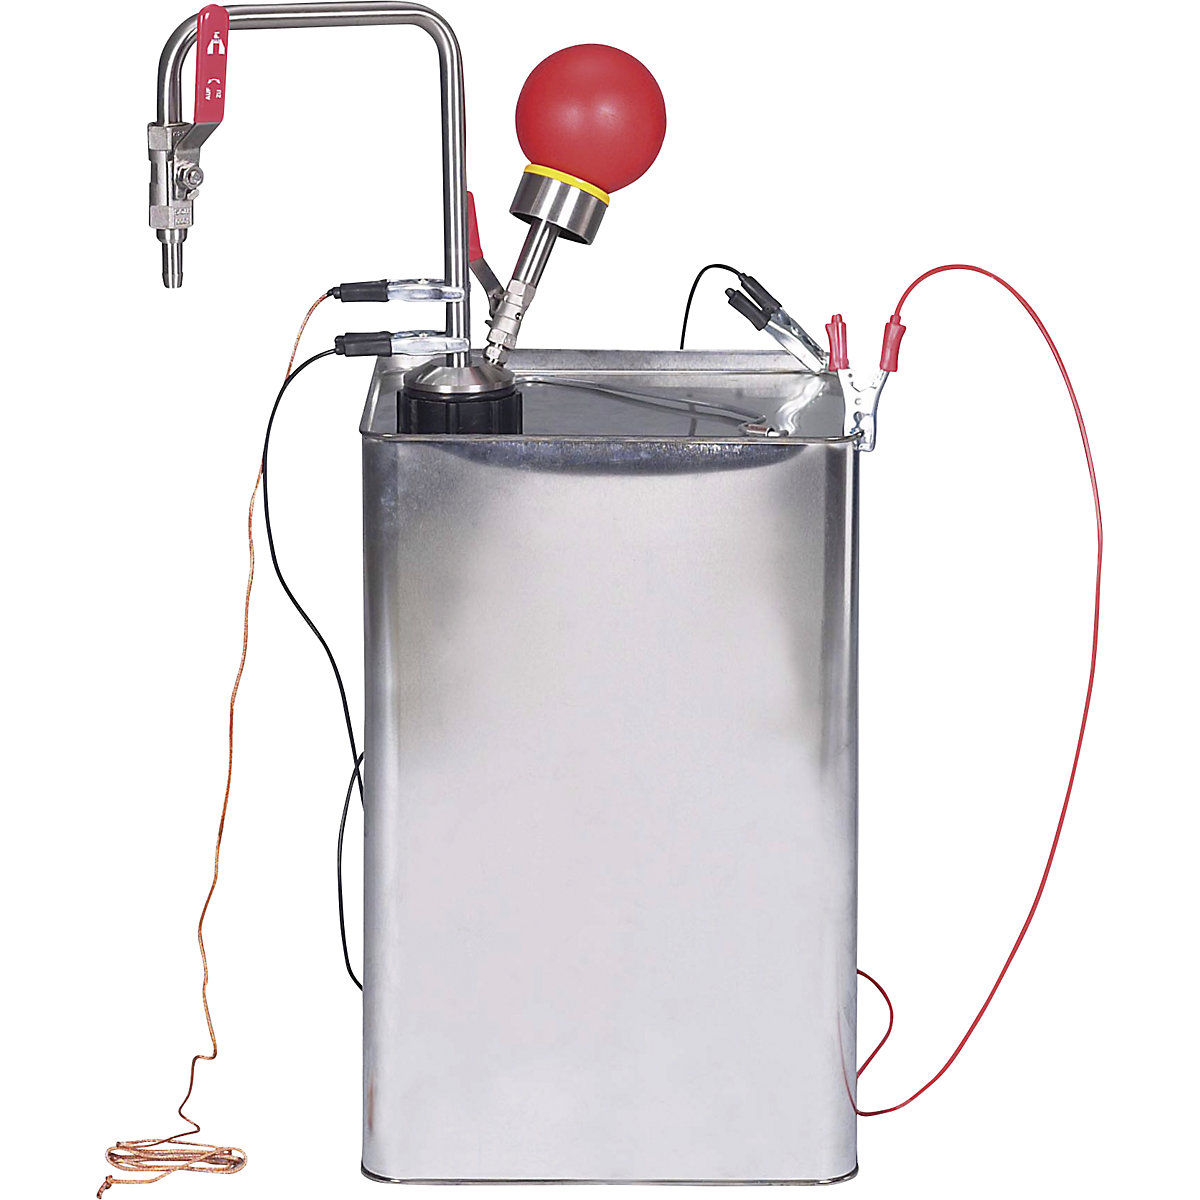 Črpalka za topila, iz nerjavnega jekla, upravljanje z roko (Slika izdelka 2)-1